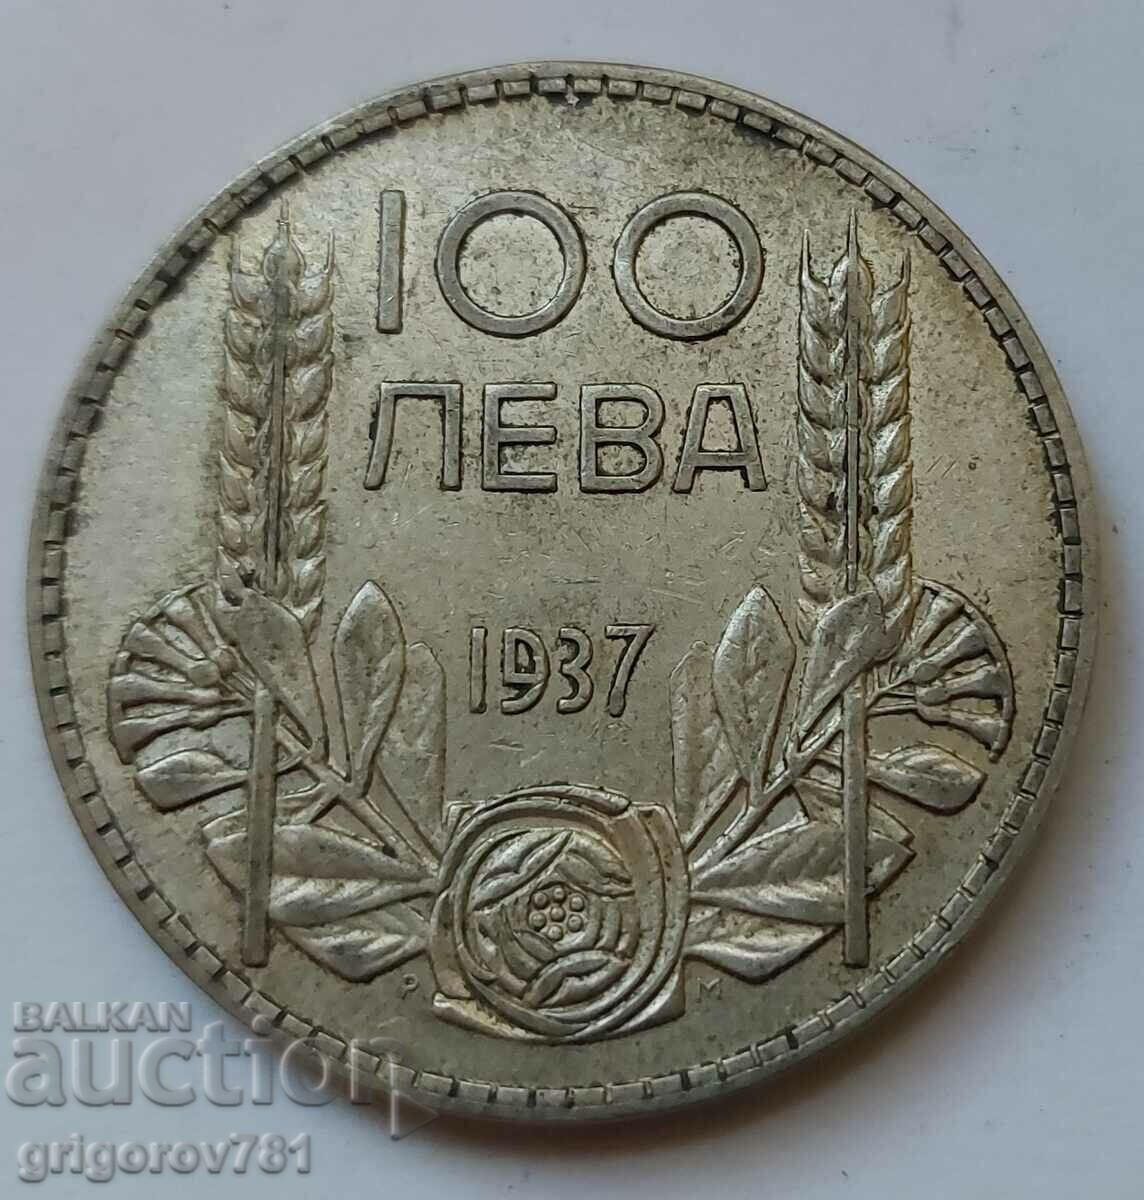 Ασήμι 100 λέβα Βουλγαρία 1937 - ασημένιο νόμισμα #95